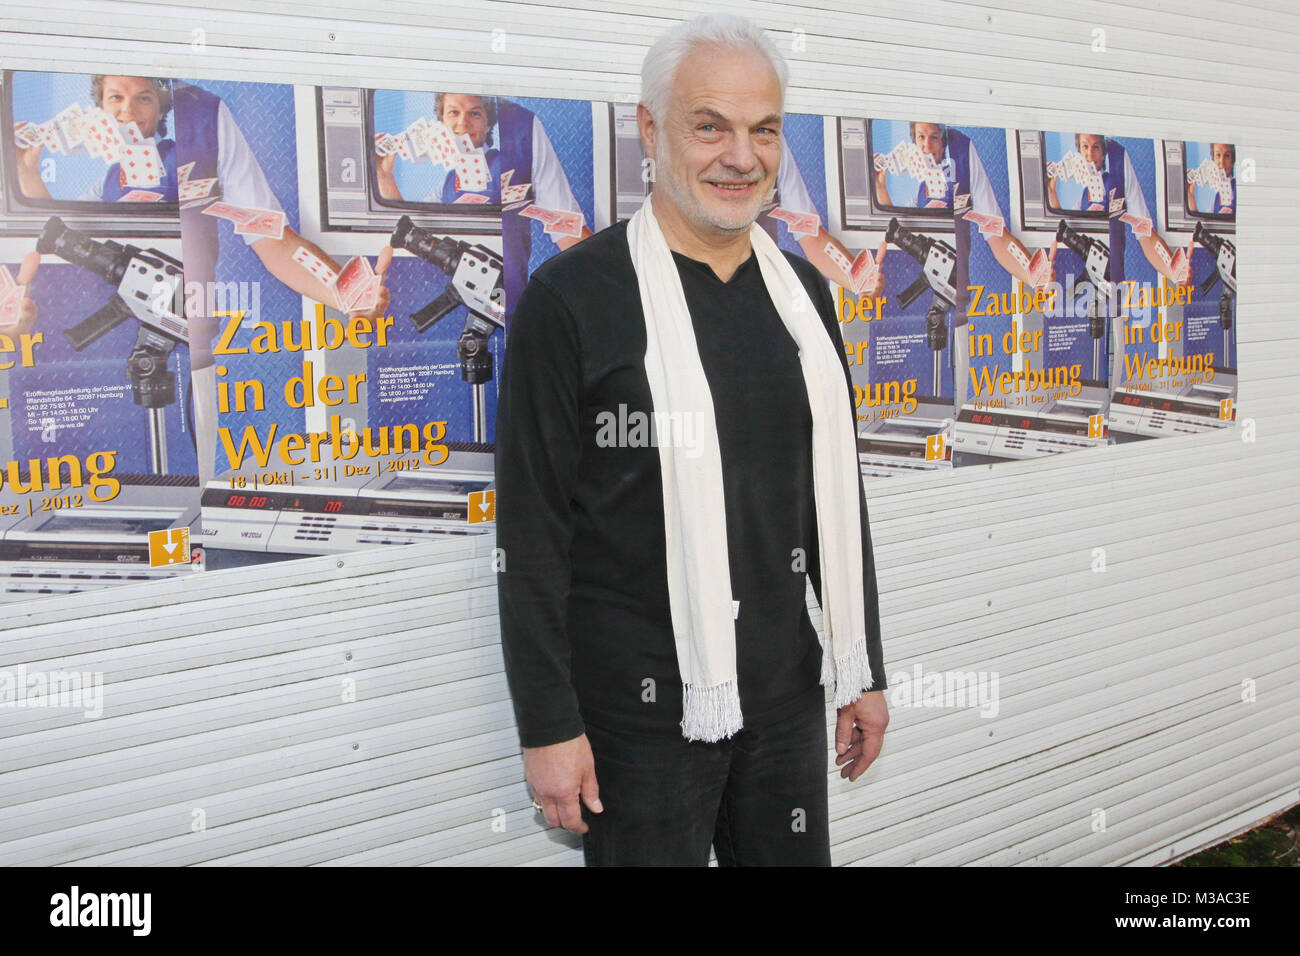 Wittus Witt (Zauberer), Eroeffnung der 'Galerie W' ueber Zauberkunst in der Werbung in der Ifflandstrasse, Amburgo, 18.10.2012 Foto Stock